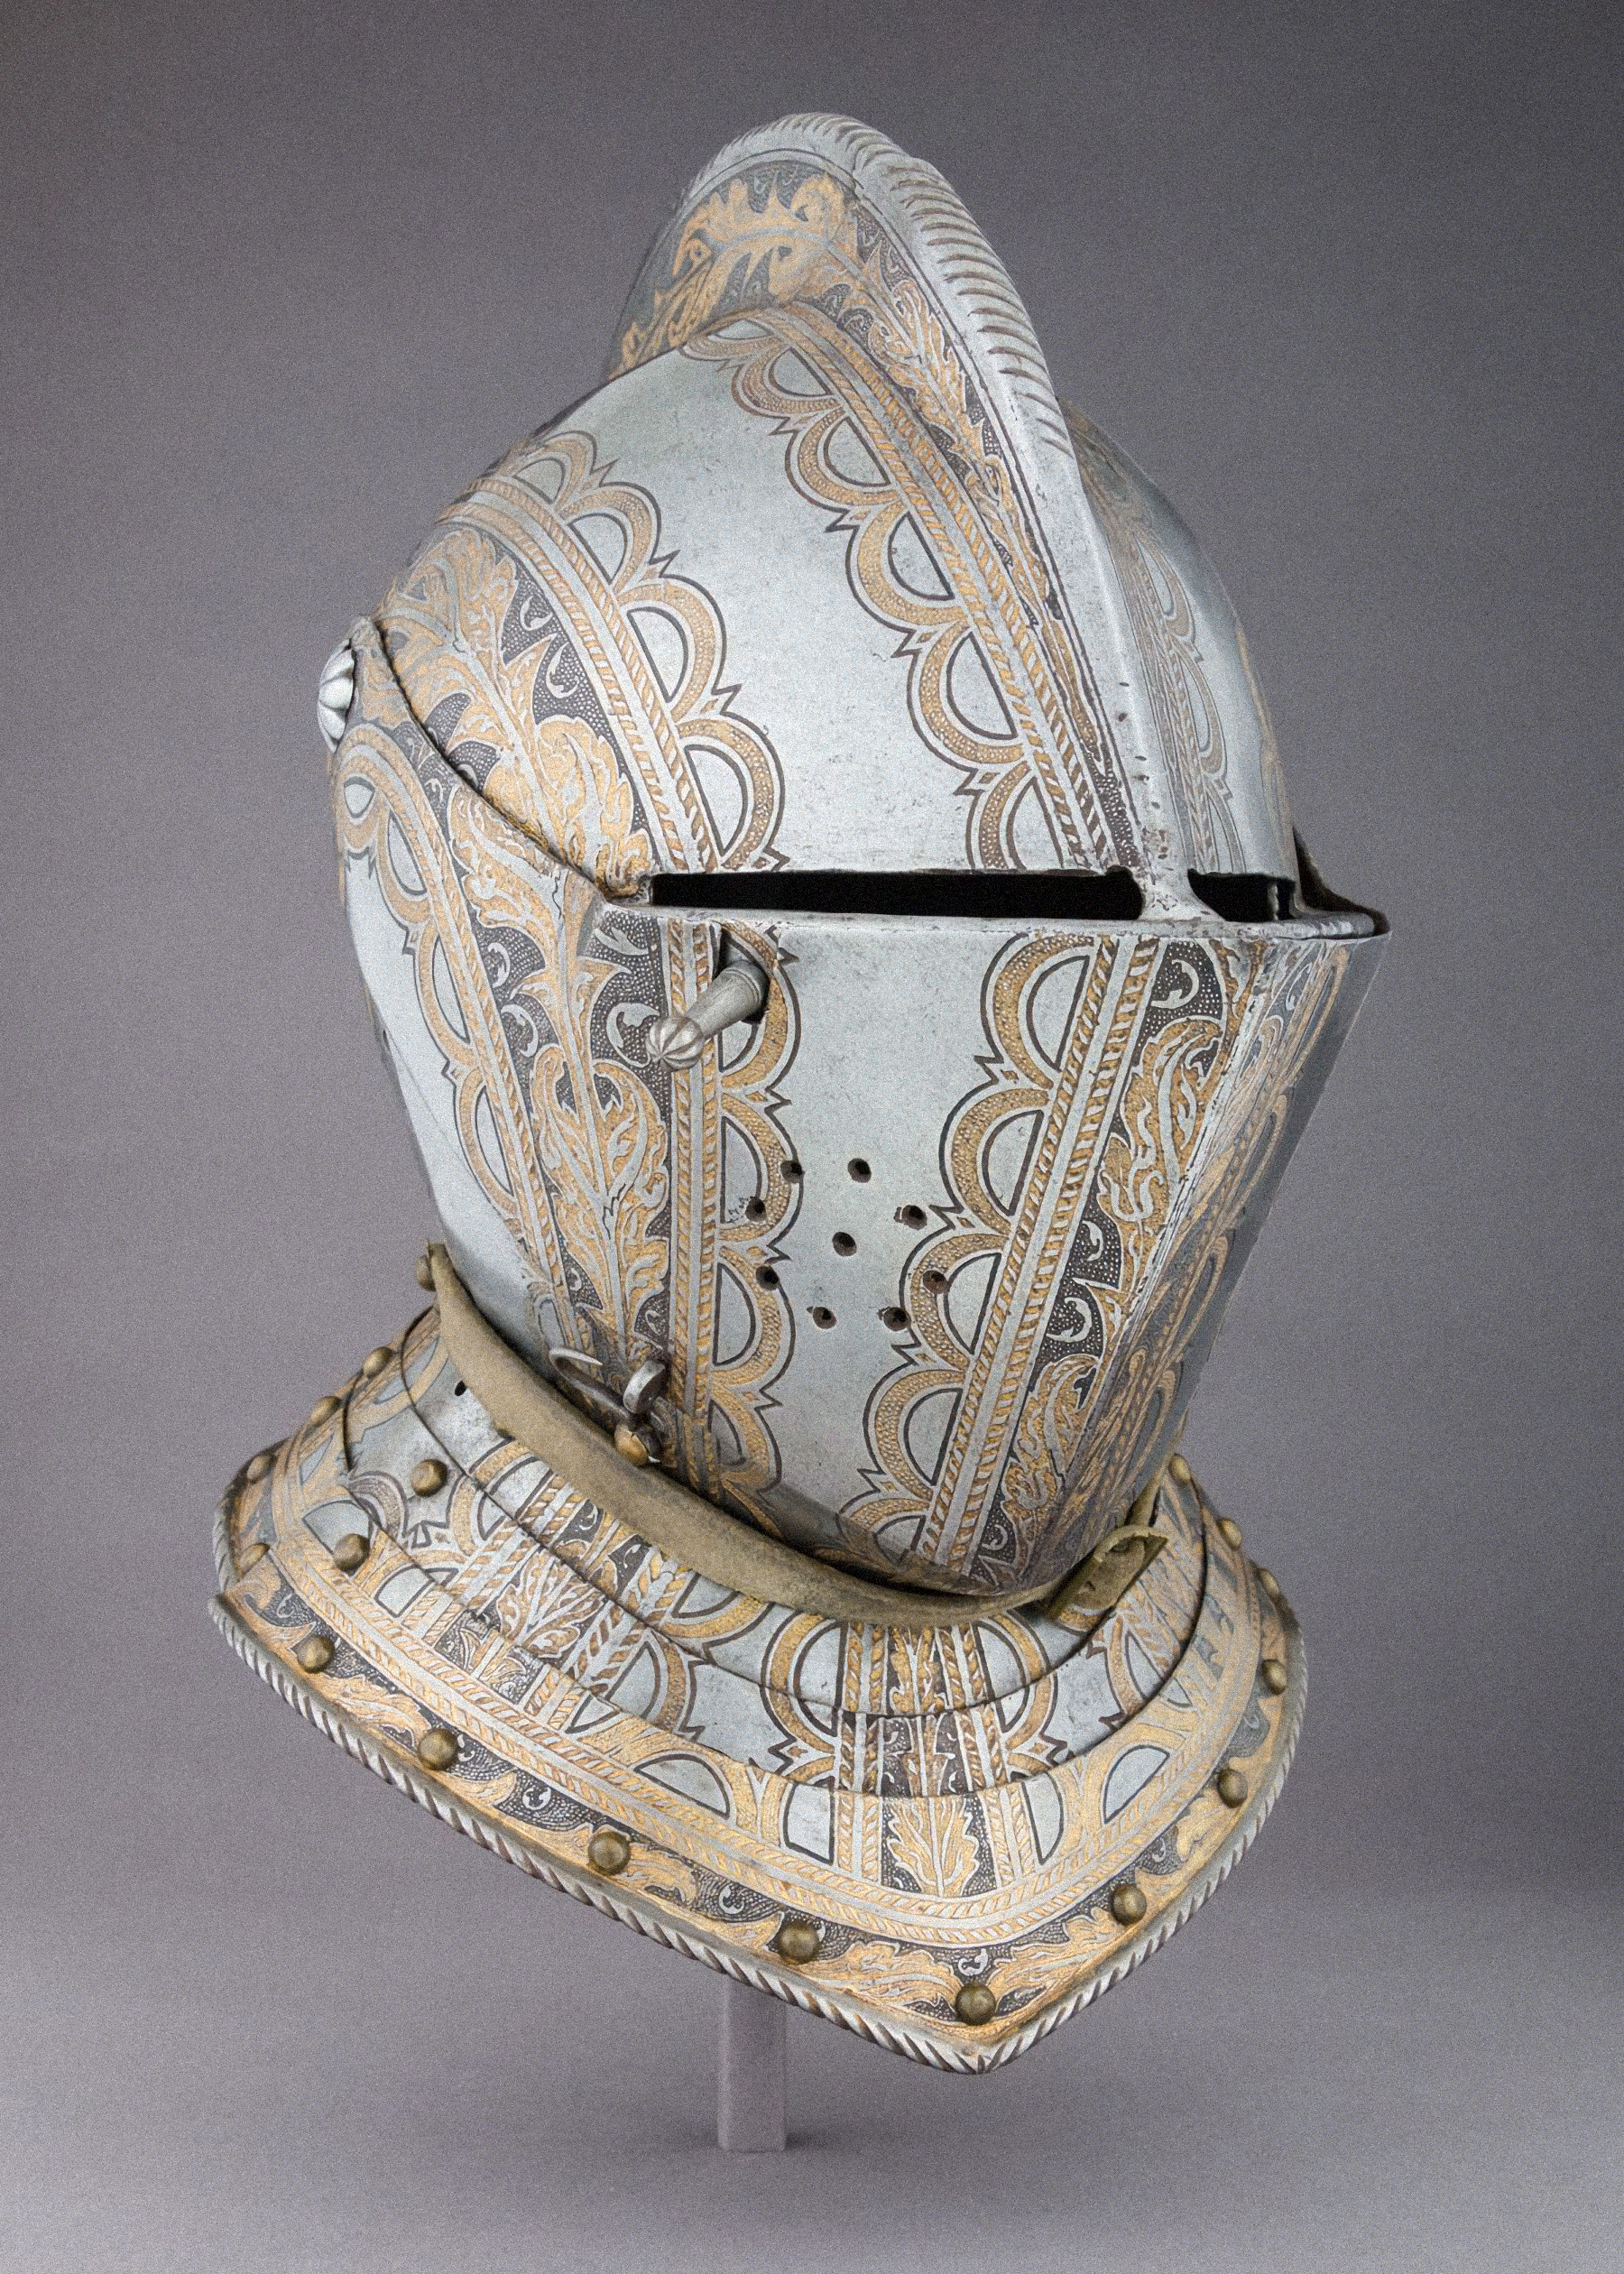 General 1800x2520 armet knight engraving gold engravings european armor museum noise portrait display